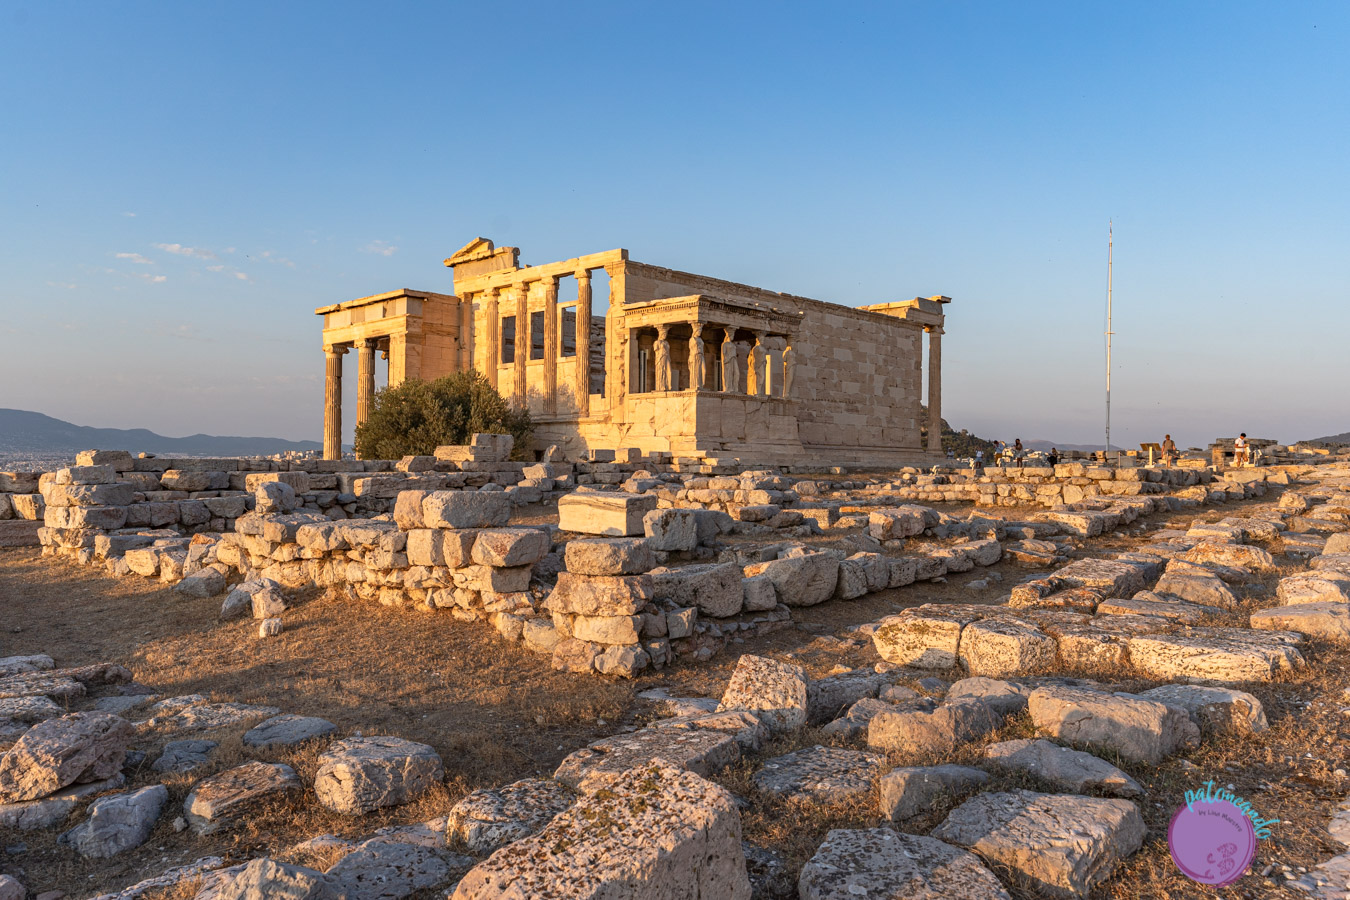 Qué hacer en tres días en Atenas - Templo de Afrodita en la Acrópolis - Patoneando blog de viajes